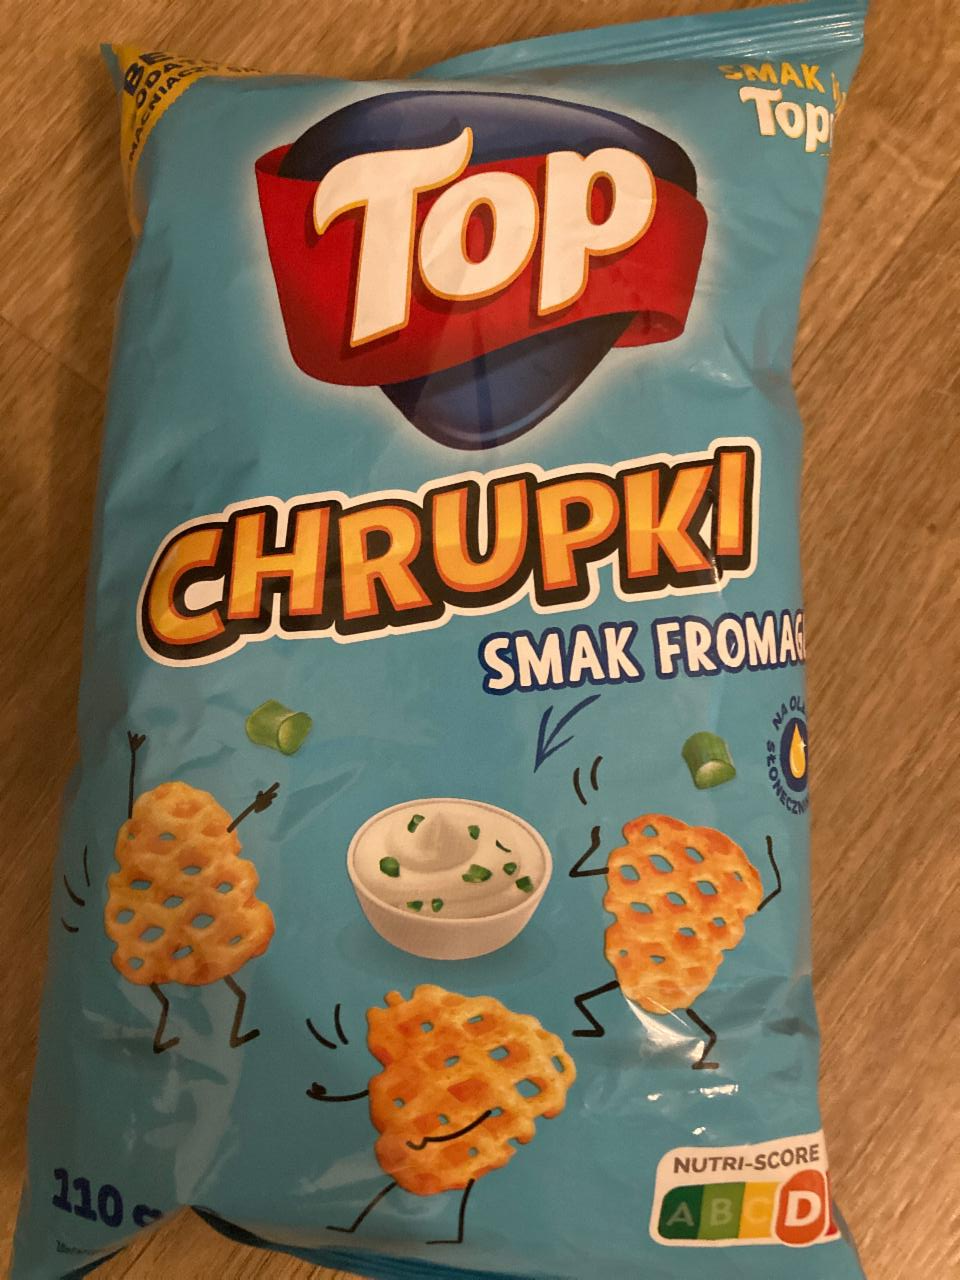 Fotografie - Top Chrupki smak fromage